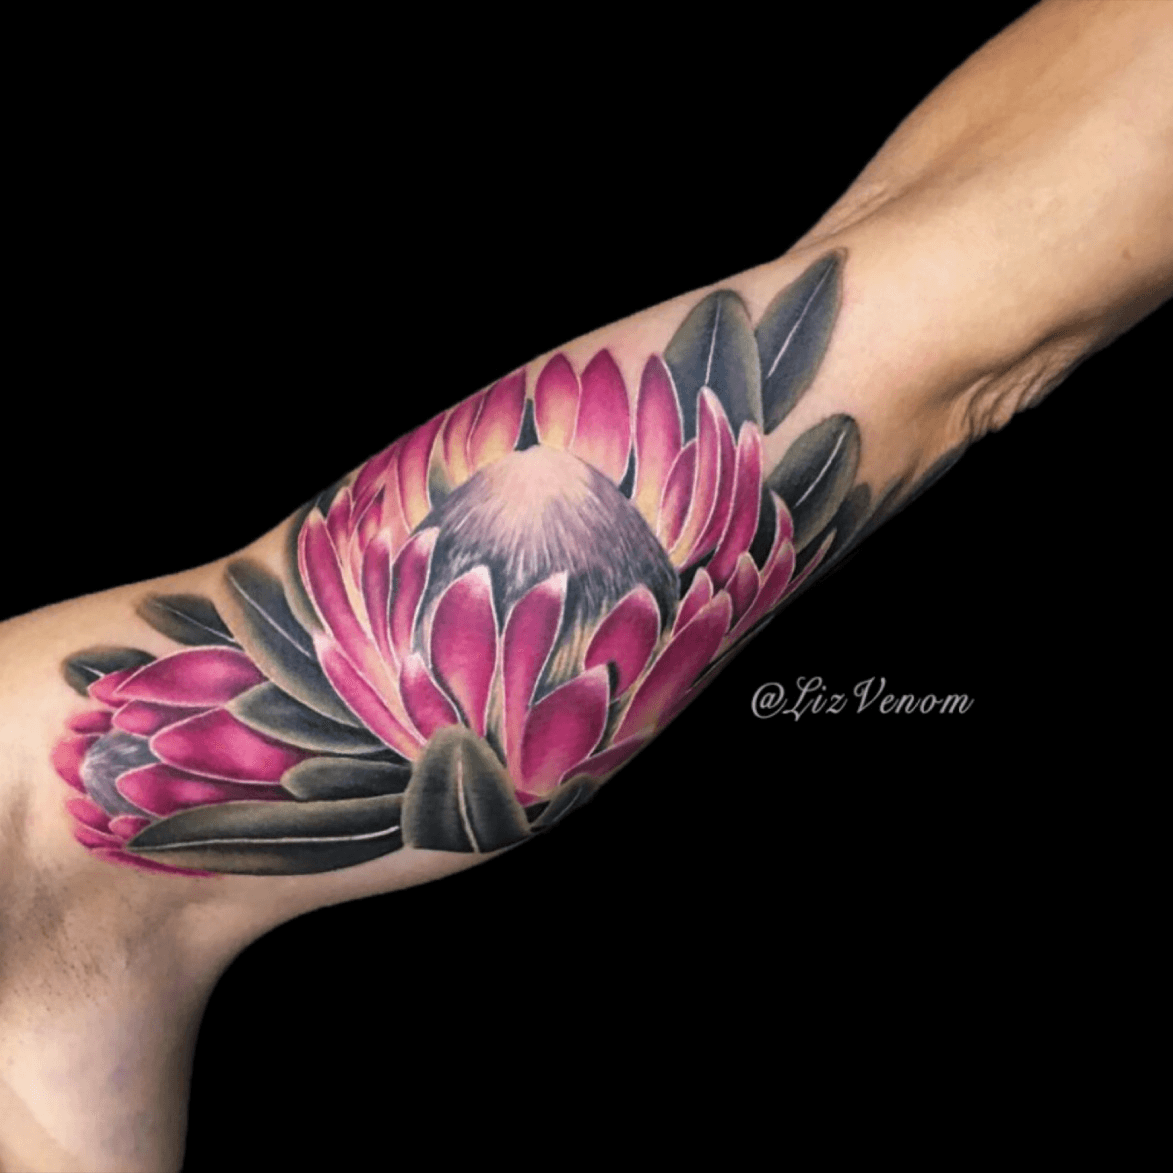 Chrysanthemum Tattoo Images  Free Download on Freepik